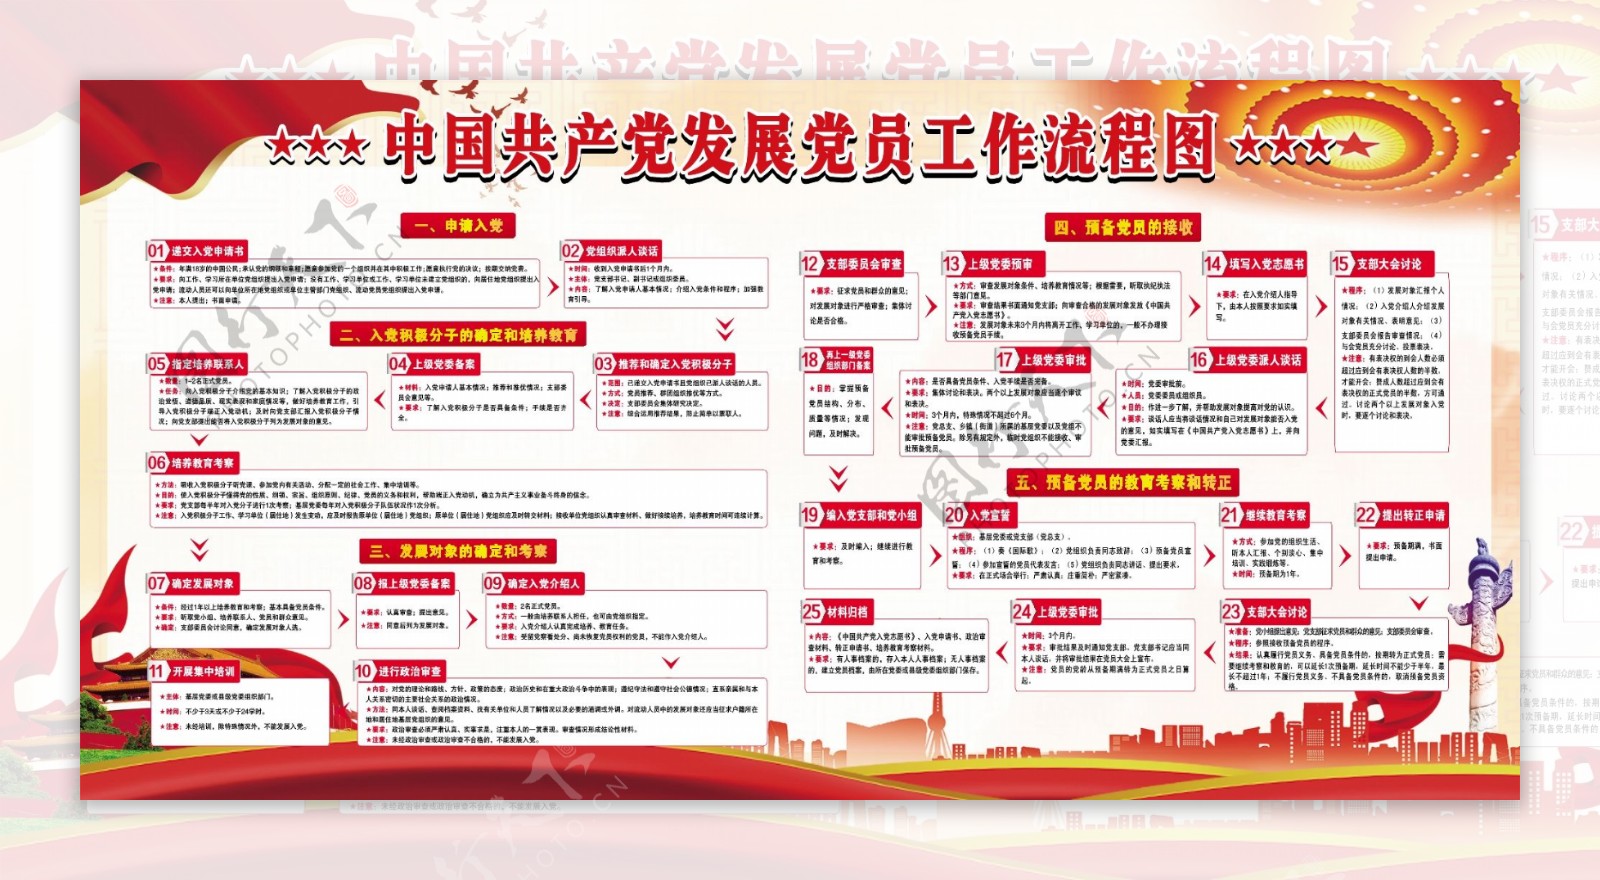 中国风发展党员流程图展板海报